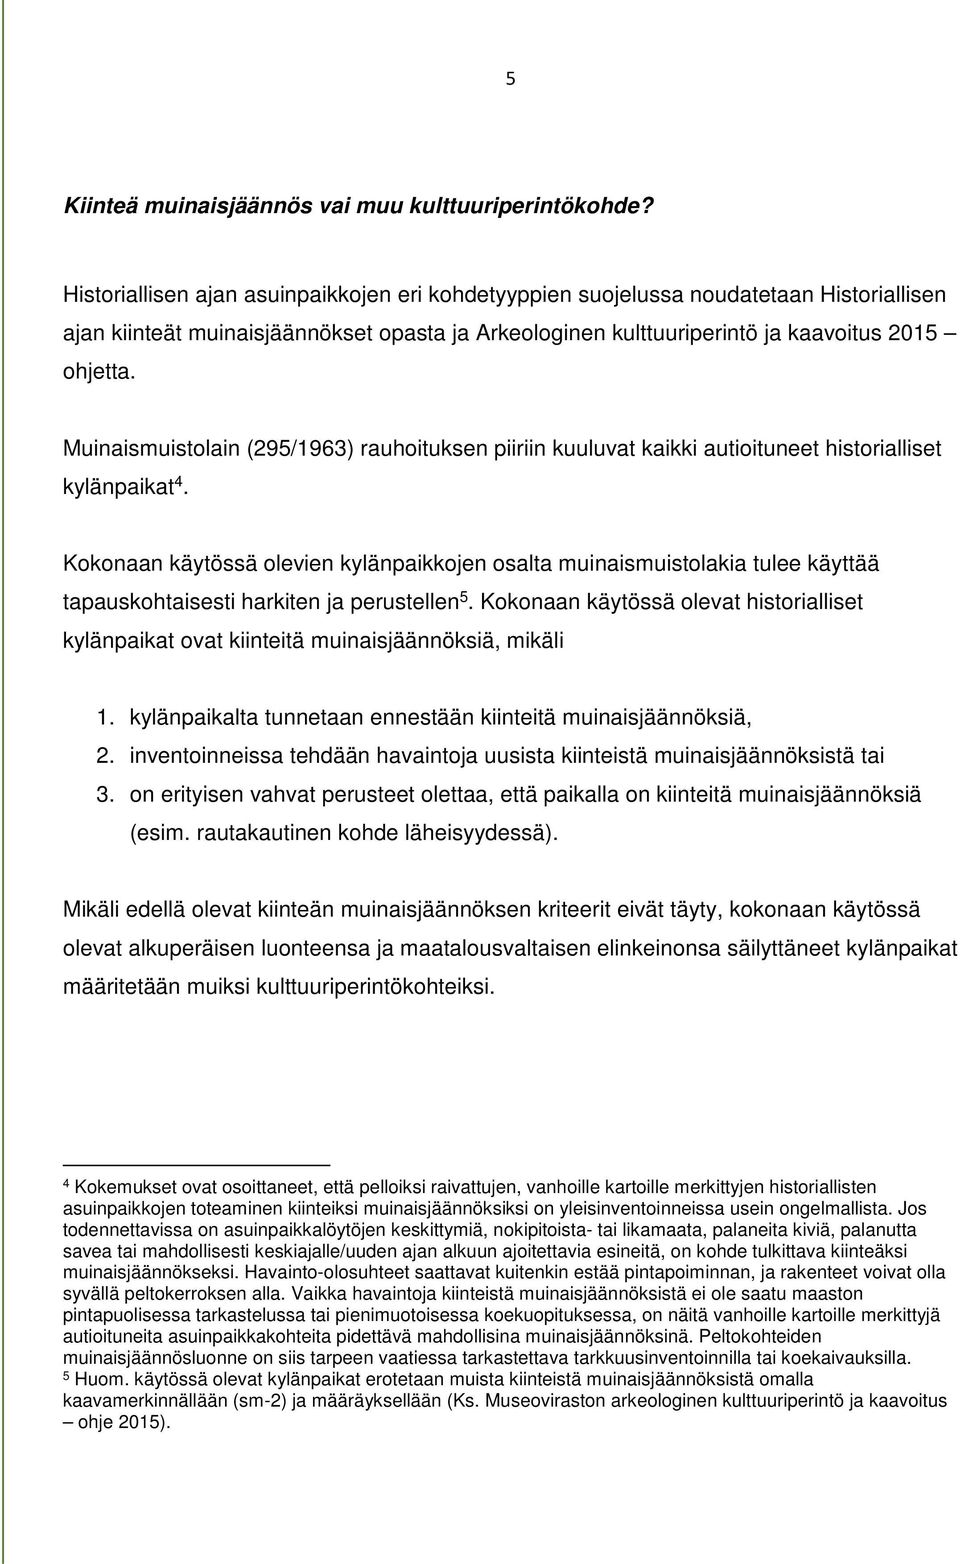 Muinaismuistolain (295/1963) rauhoituksen piiriin kuuluvat kaikki autioituneet historialliset kylänpaikat 4.